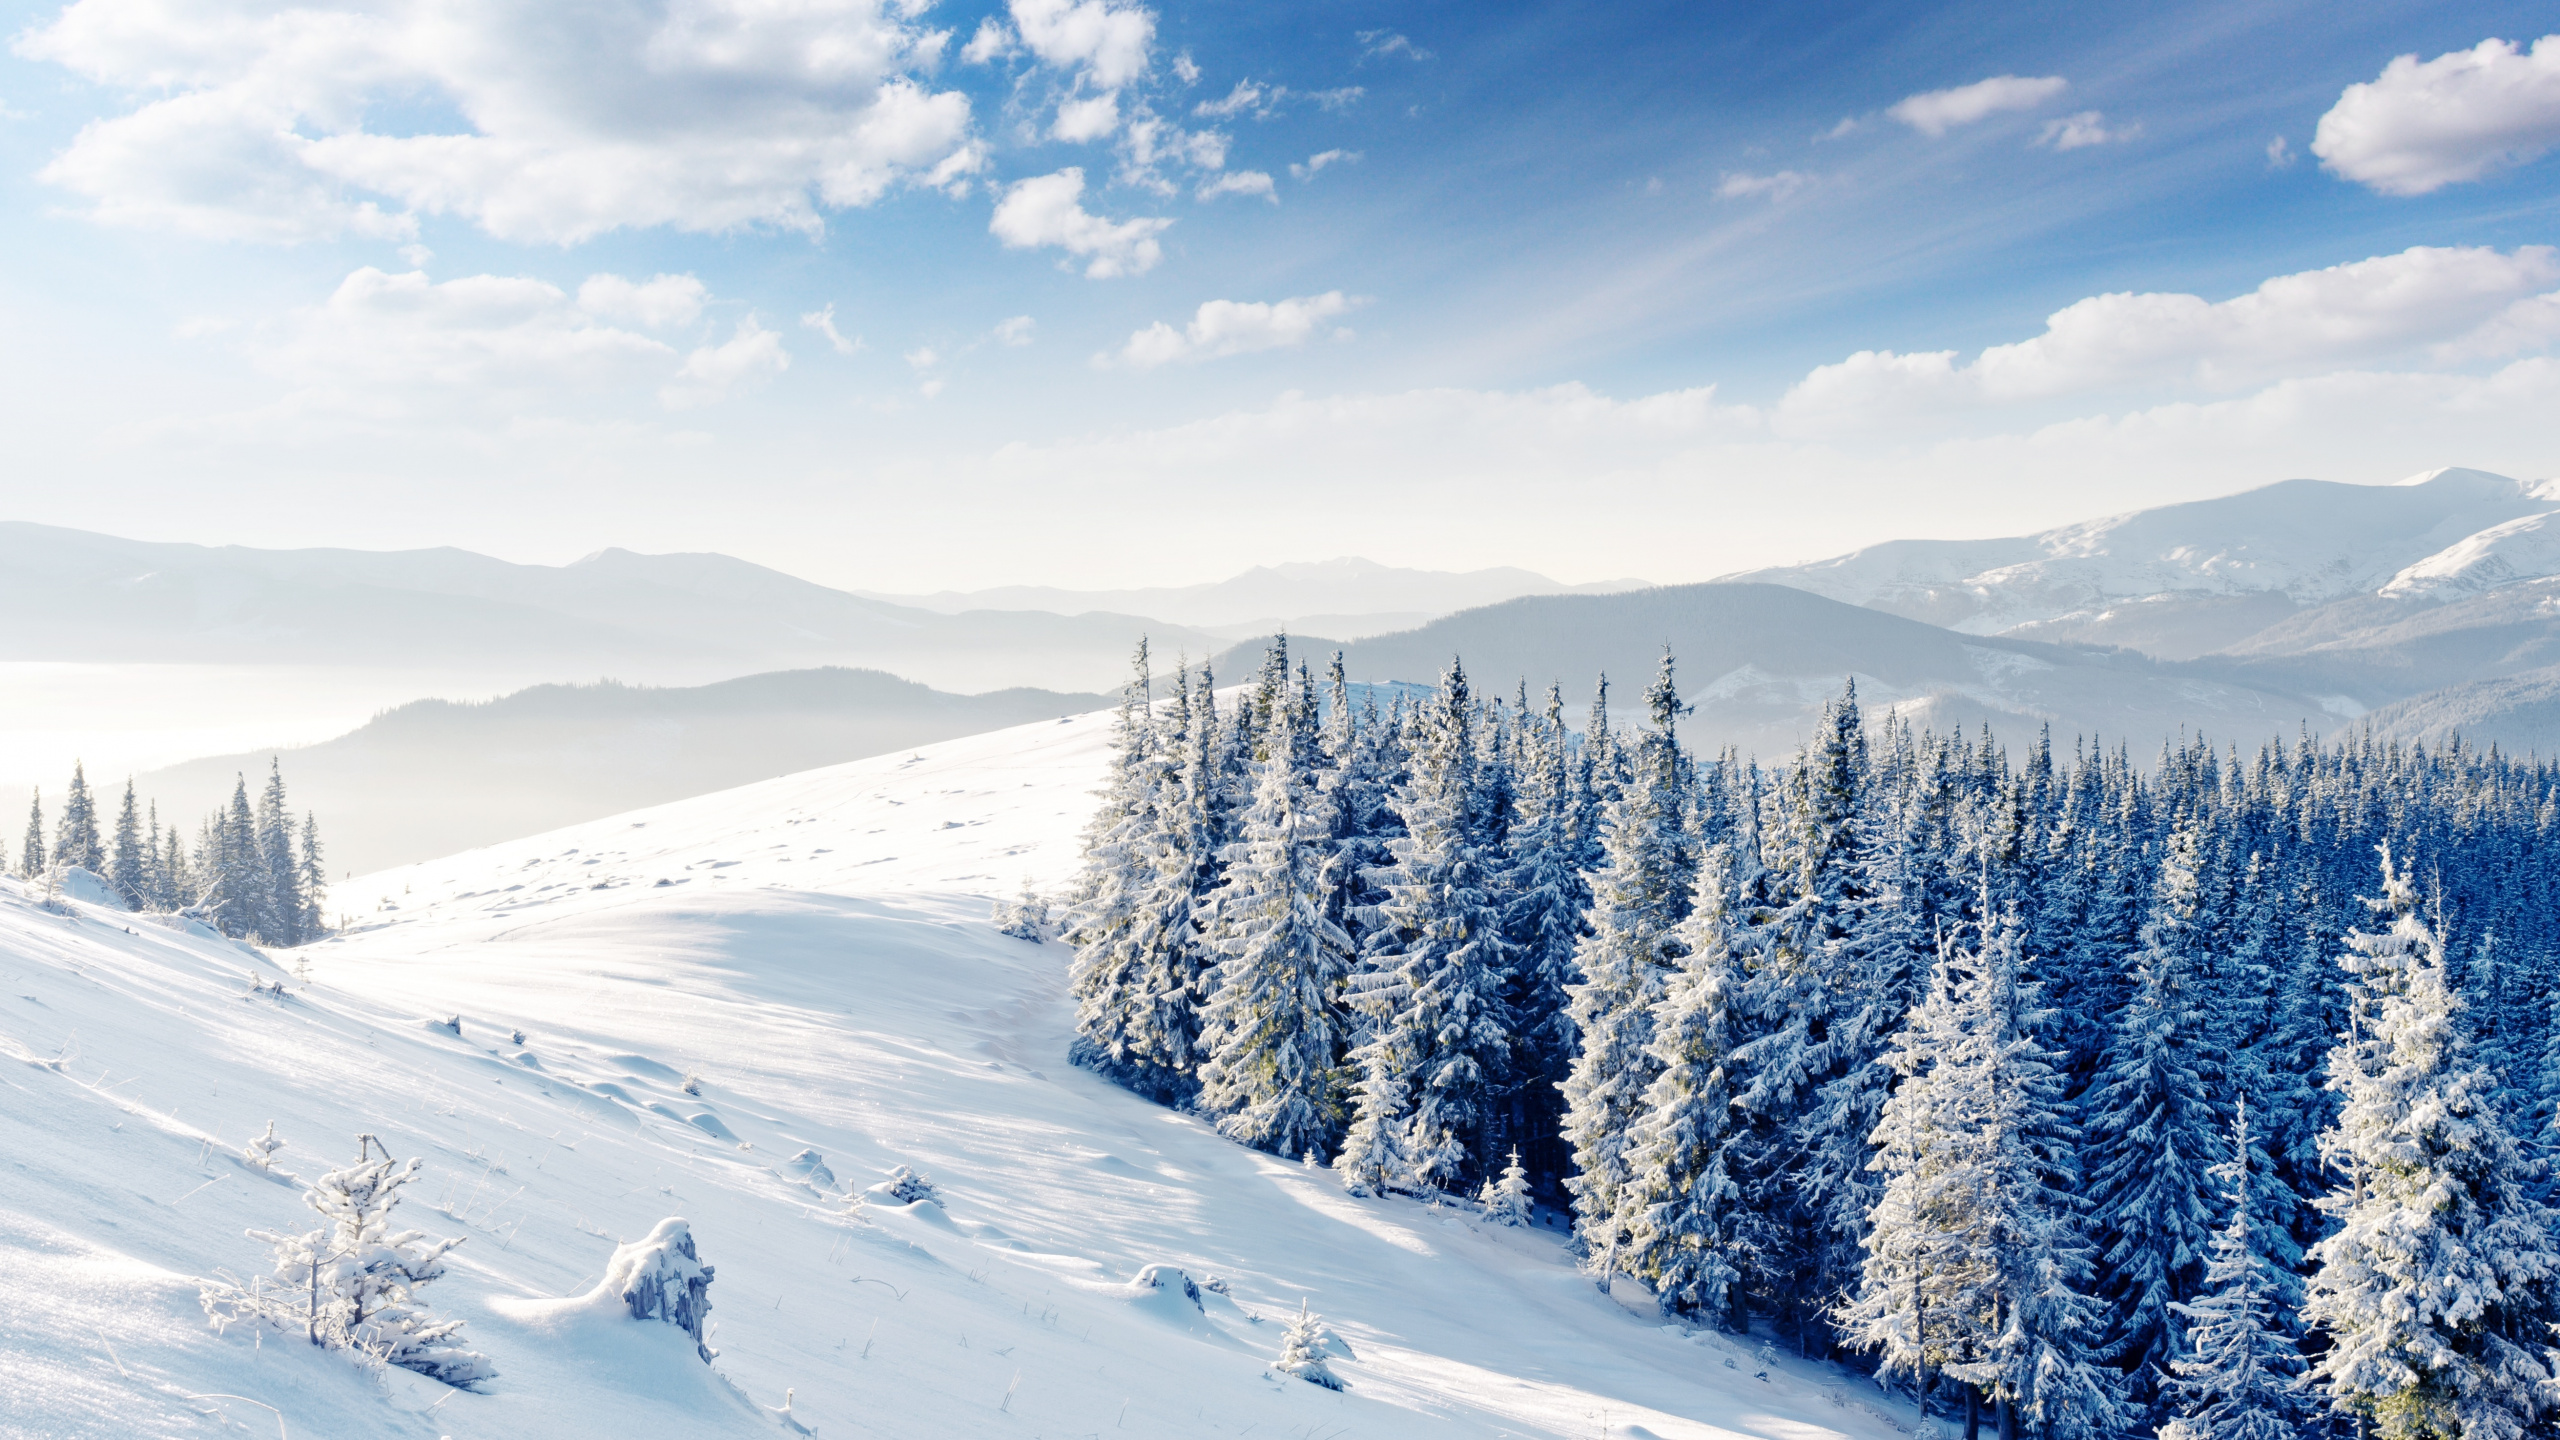 冬天, 多山的地貌, 冻结, 北极, 滑雪道 壁纸 2560x1440 允许